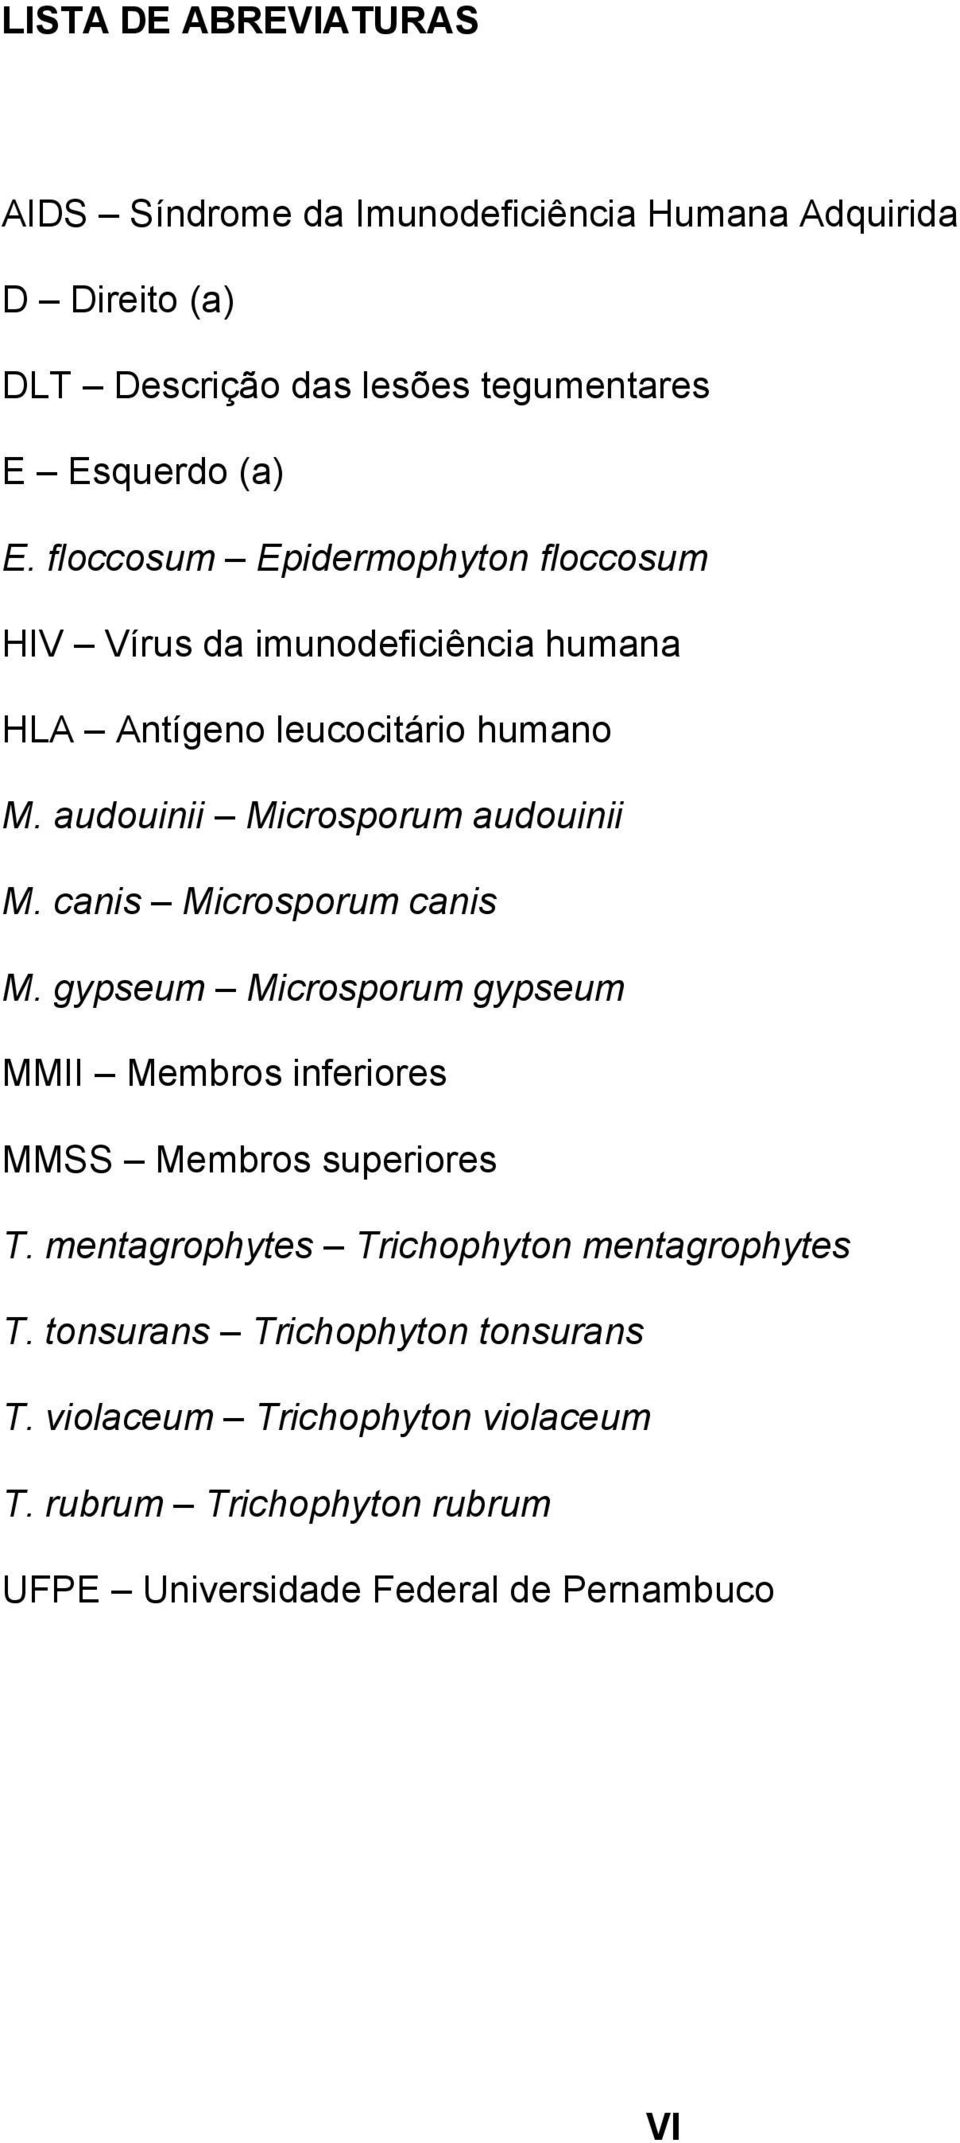 canis Microsporum canis M. gypseum Microsporum gypseum MMII Membros inferiores MMSS Membros superiores T.